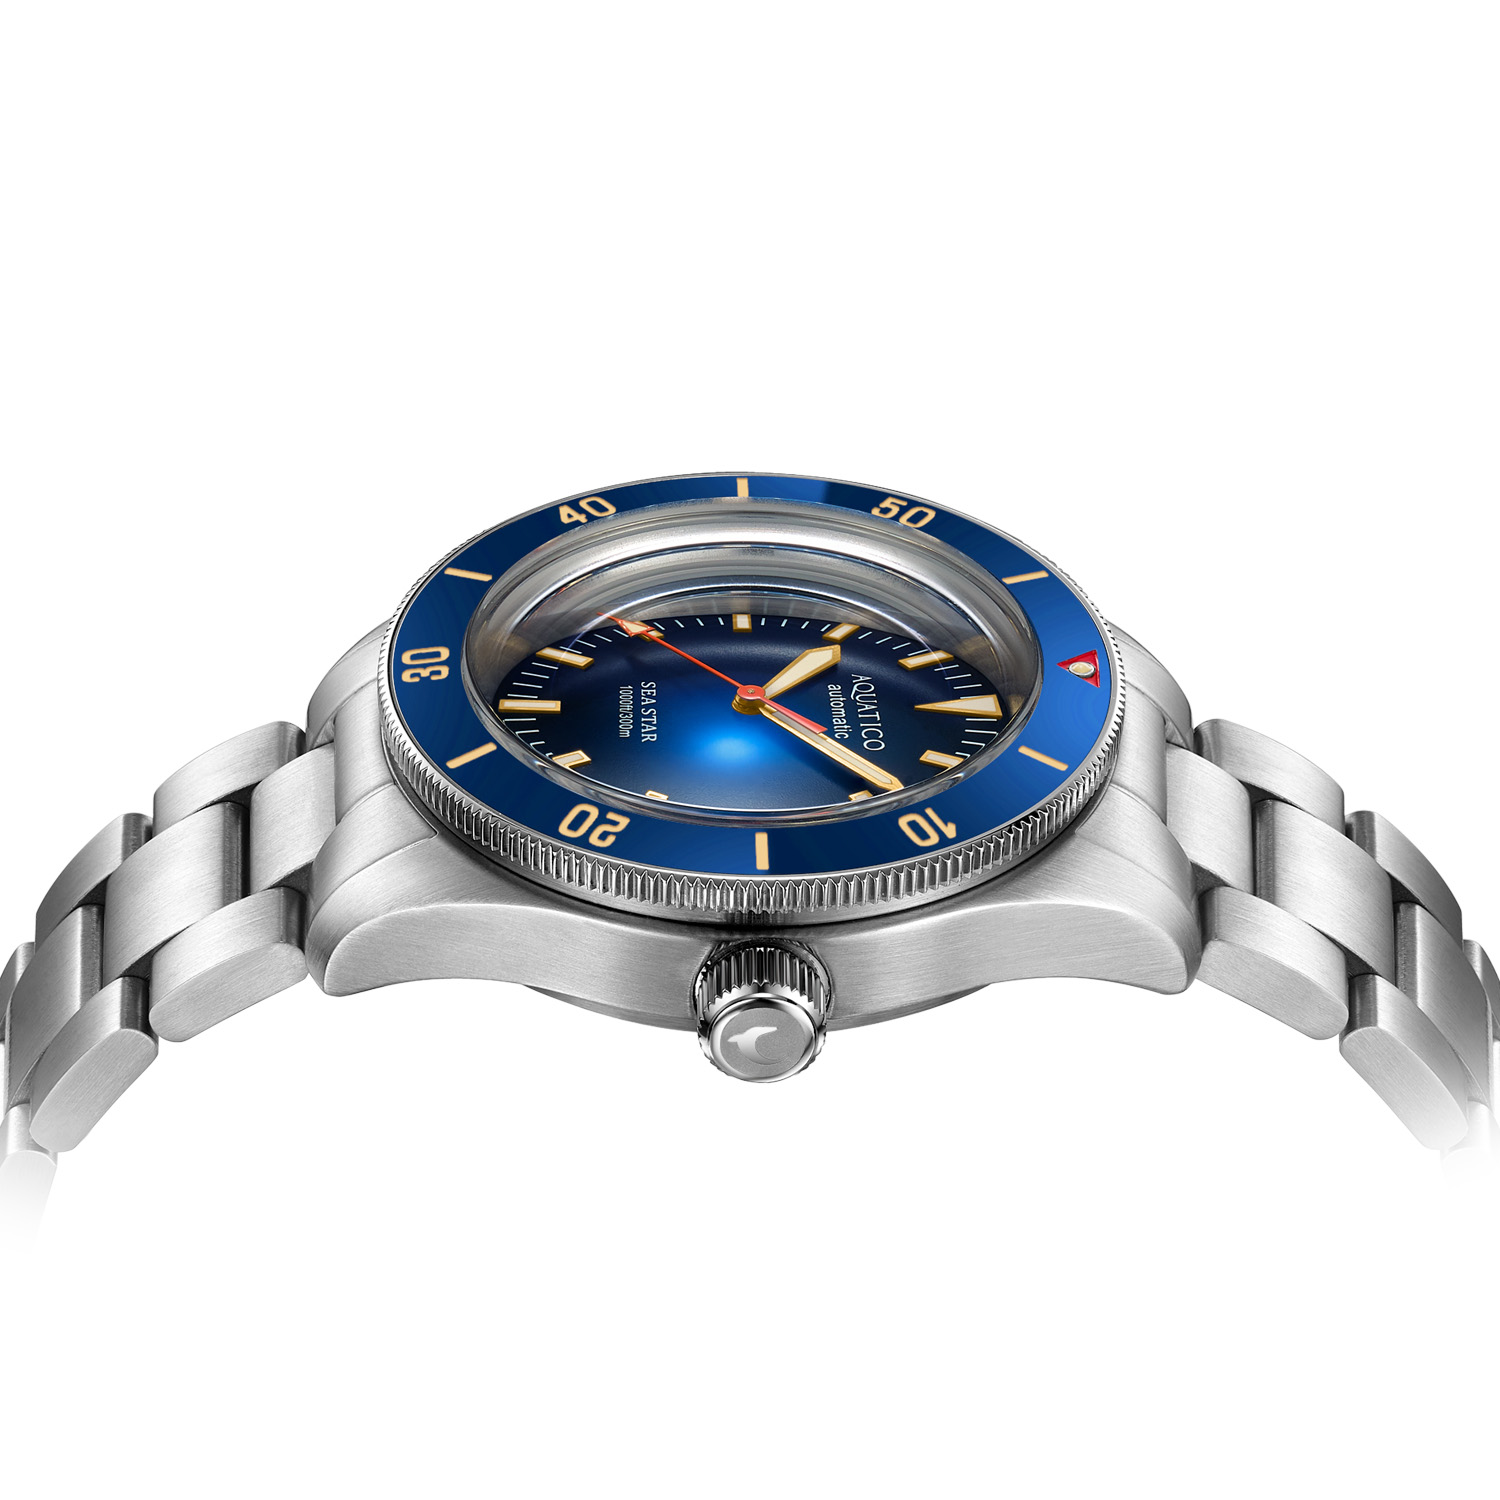 Aquatico Sea Star V2 42mm Automatic Men's Diver Watch Blue Dial/Blue Bezel AQ1009S-BL-NH35